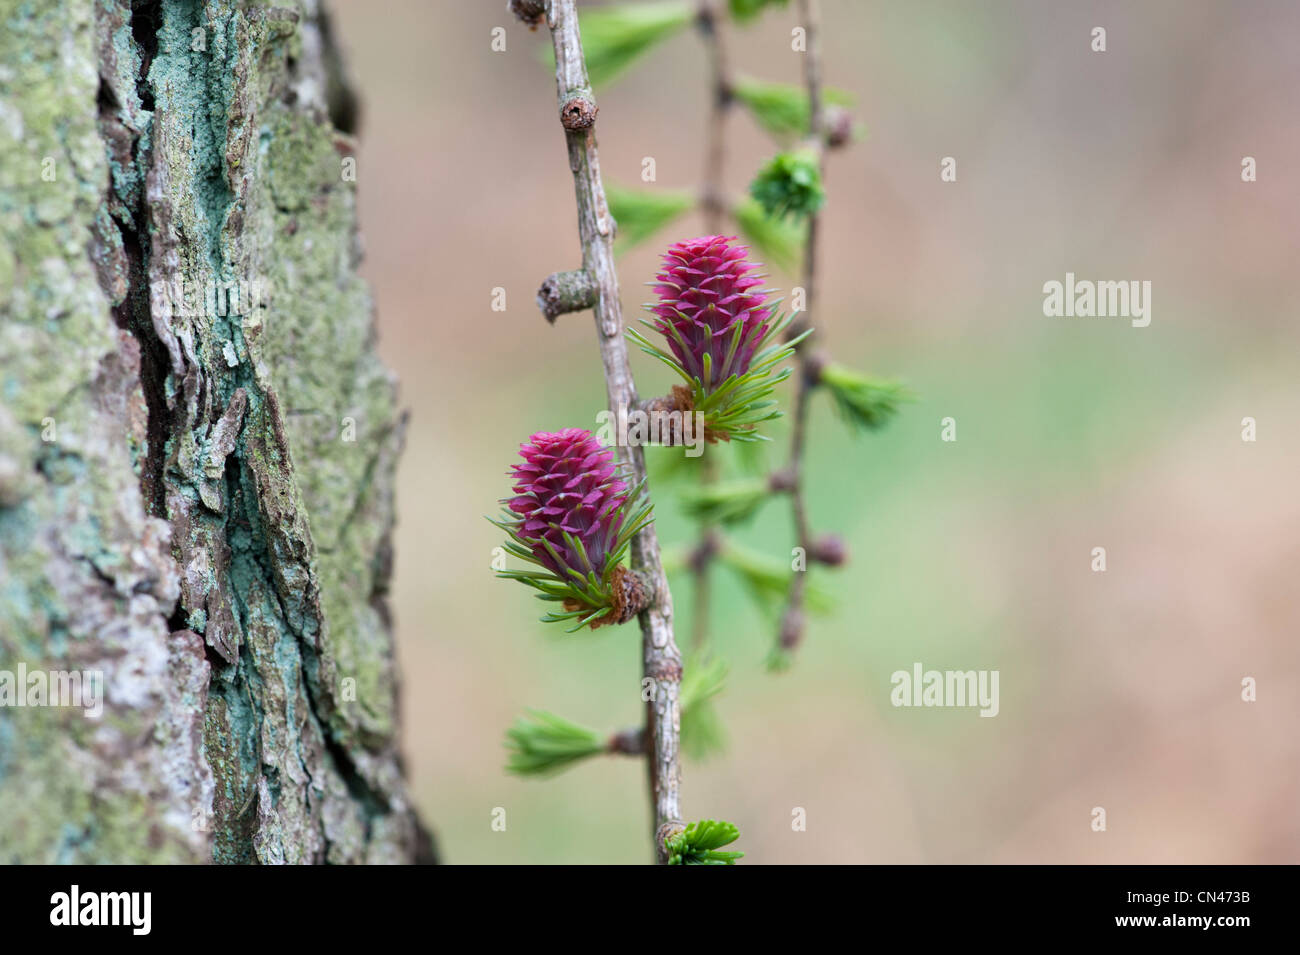 Larix decidua. Larch tree female flower in spring Stock Photo